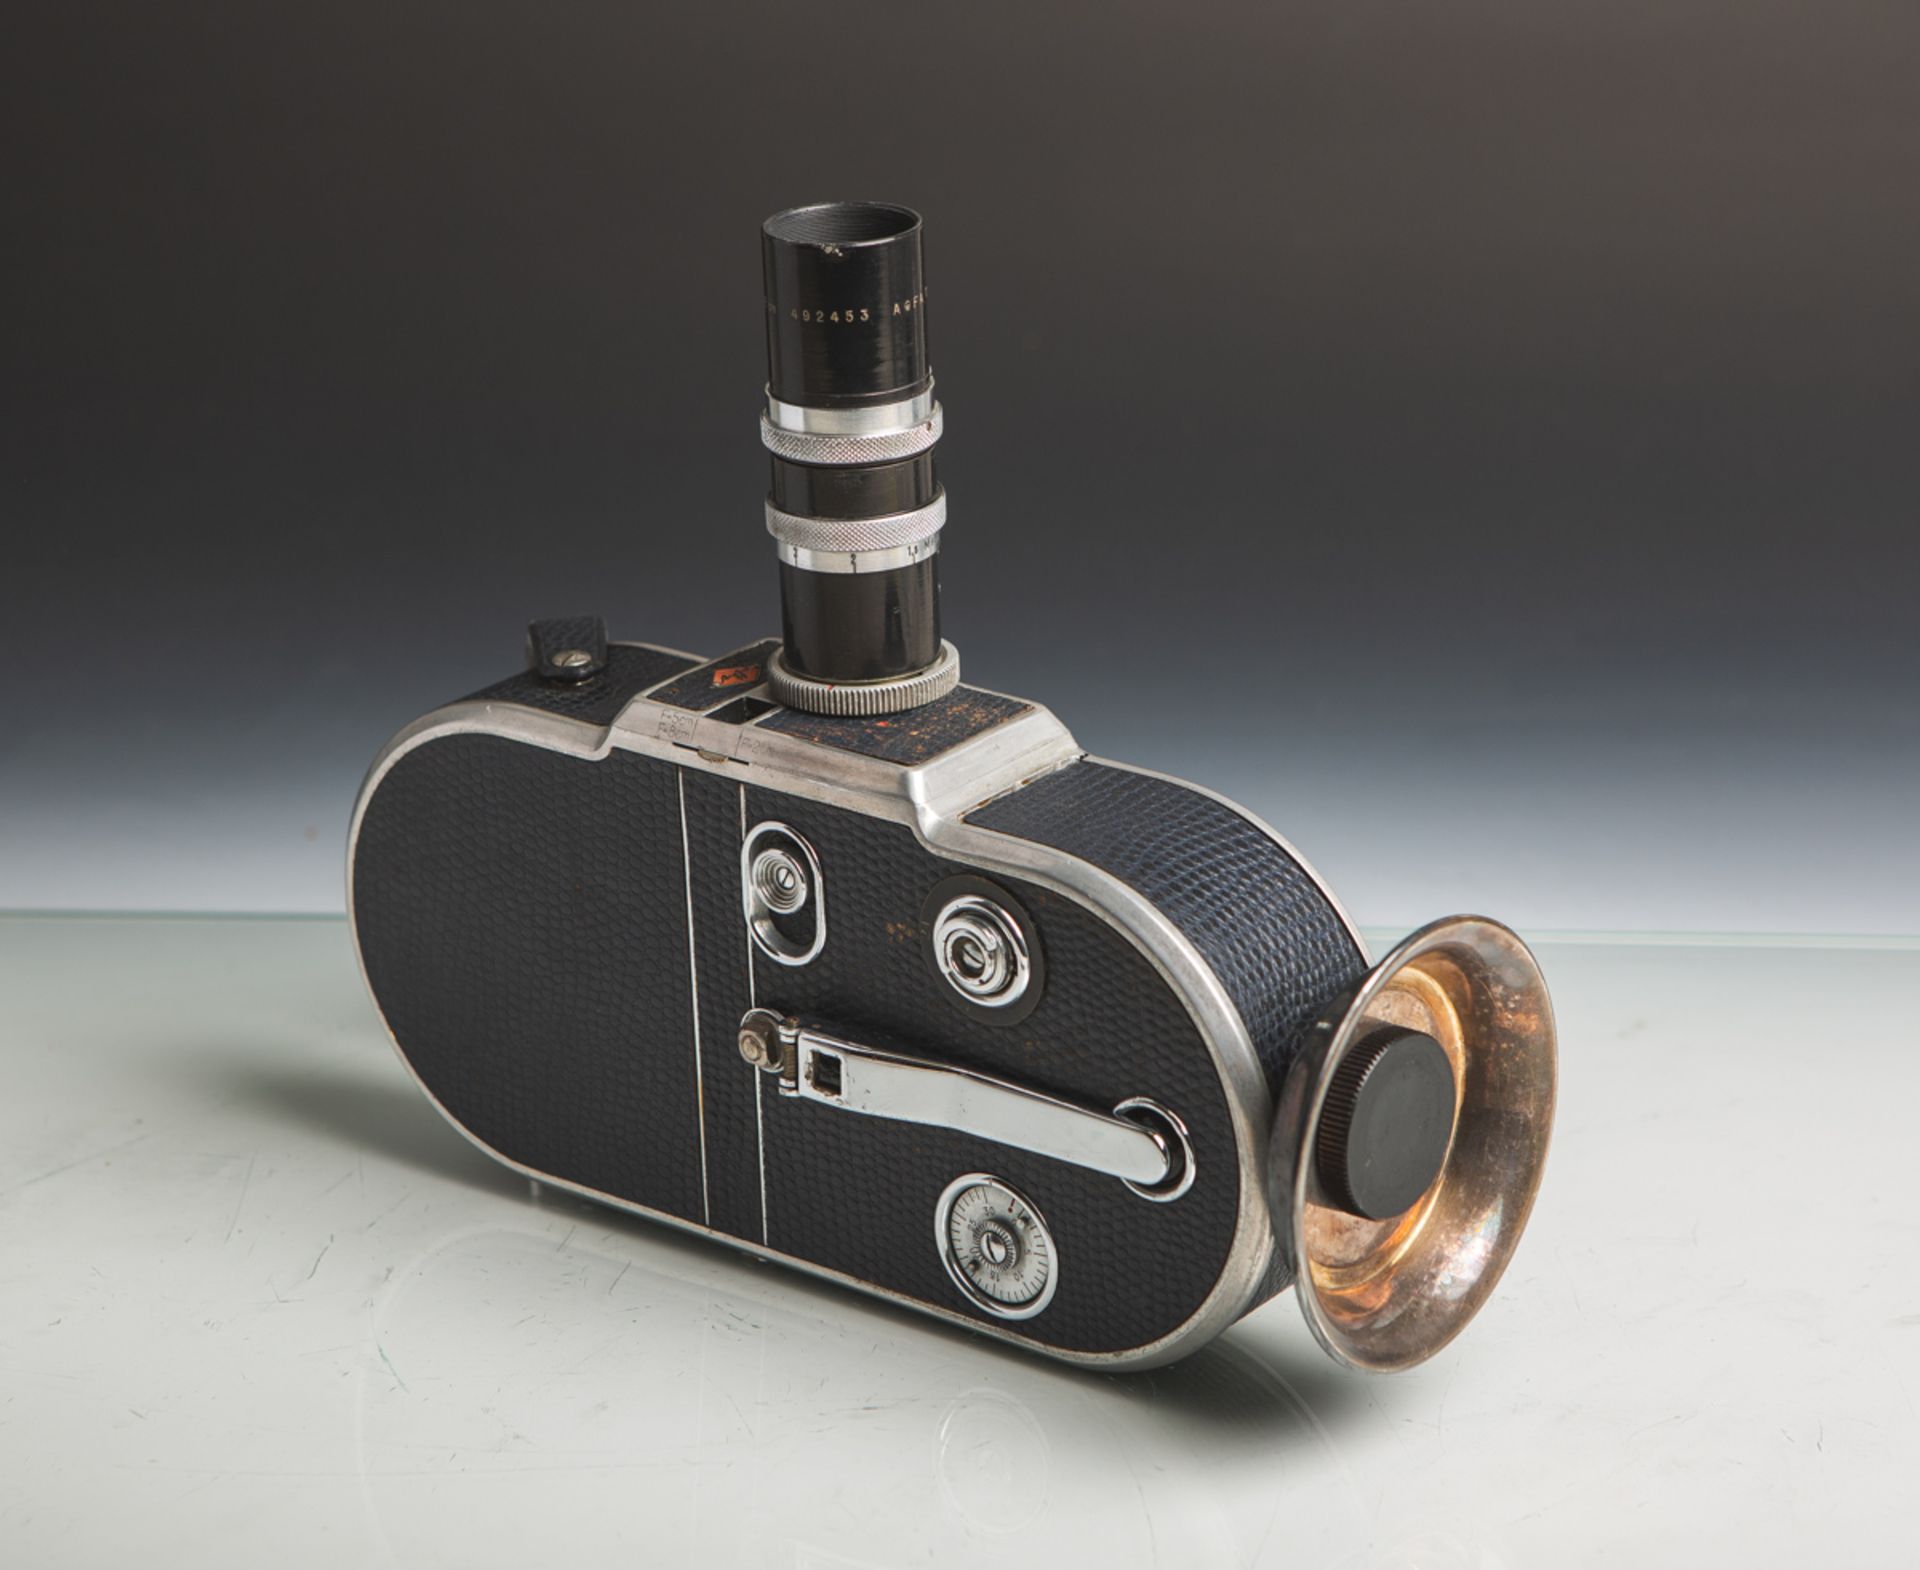 Filmkamera "Movex 30 L" von Agfa (Bj. 1932), Optik "Agfa Tele-Kine-Anastigmat", 1:3,5 / 8